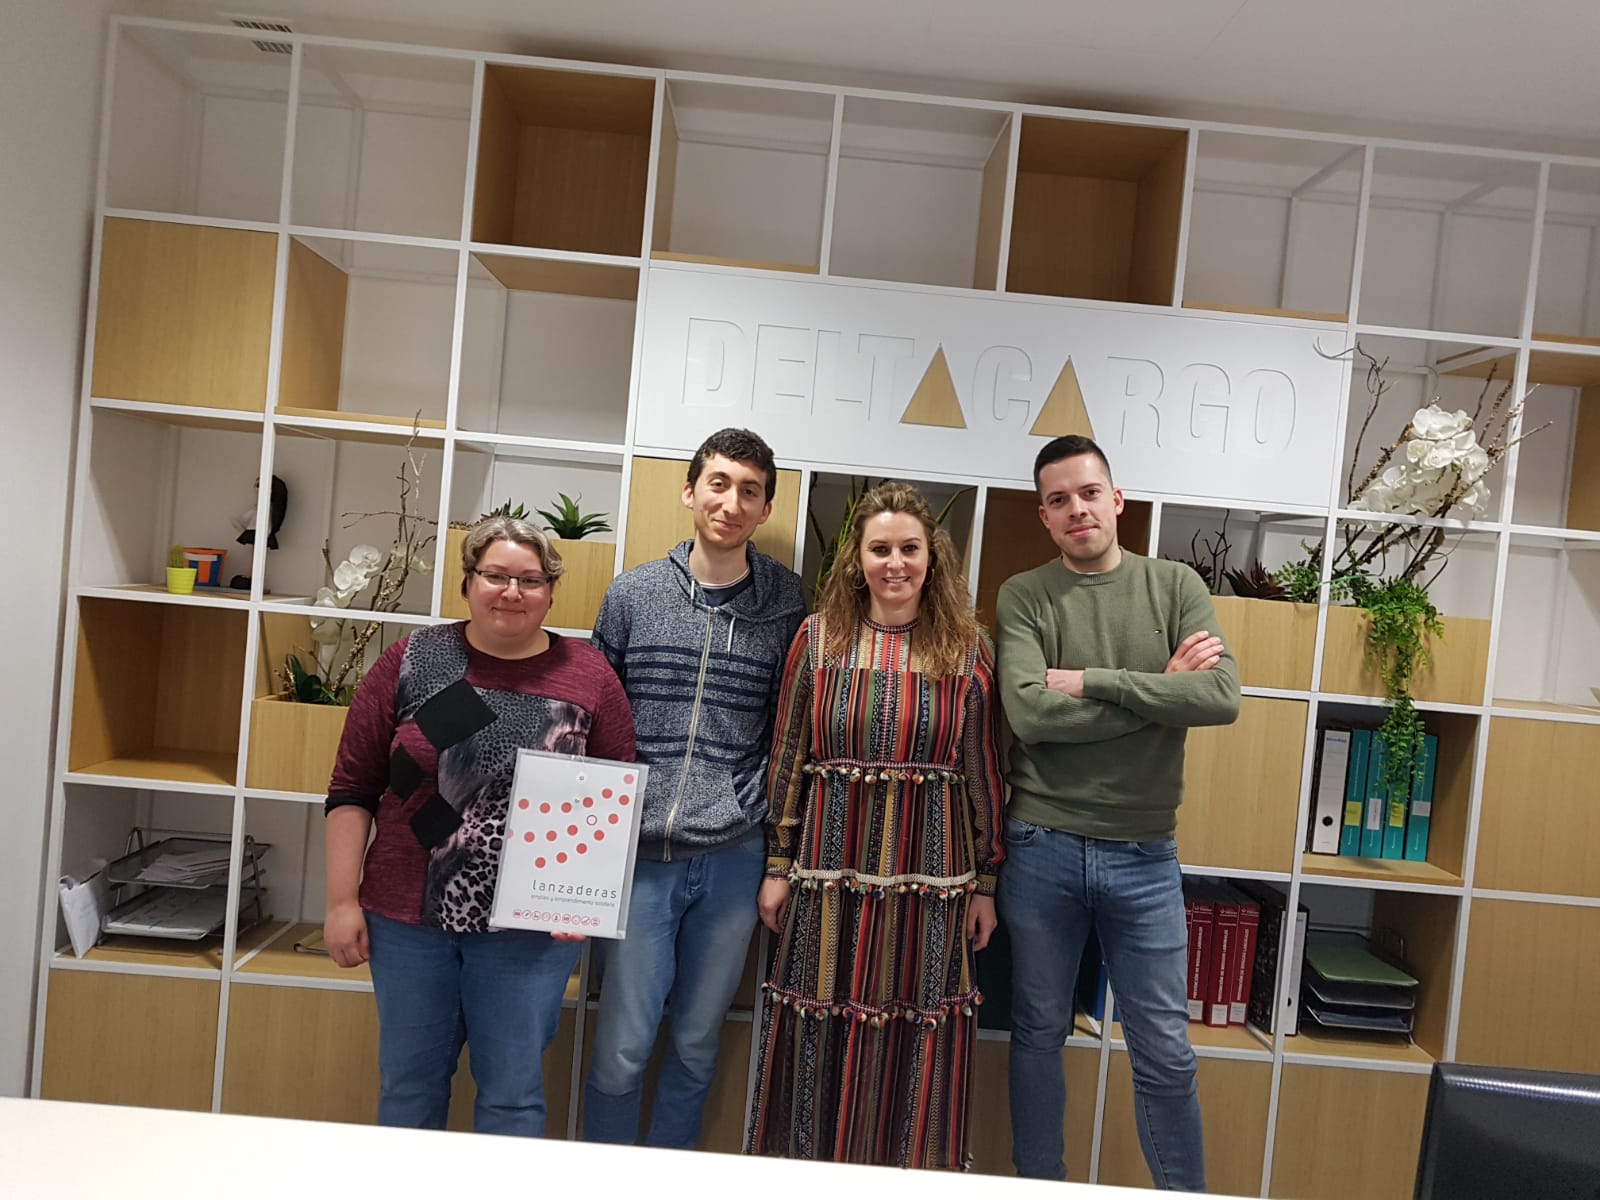 lanzadera de empleo Santiago de Compostela 2018 visita deltacargo